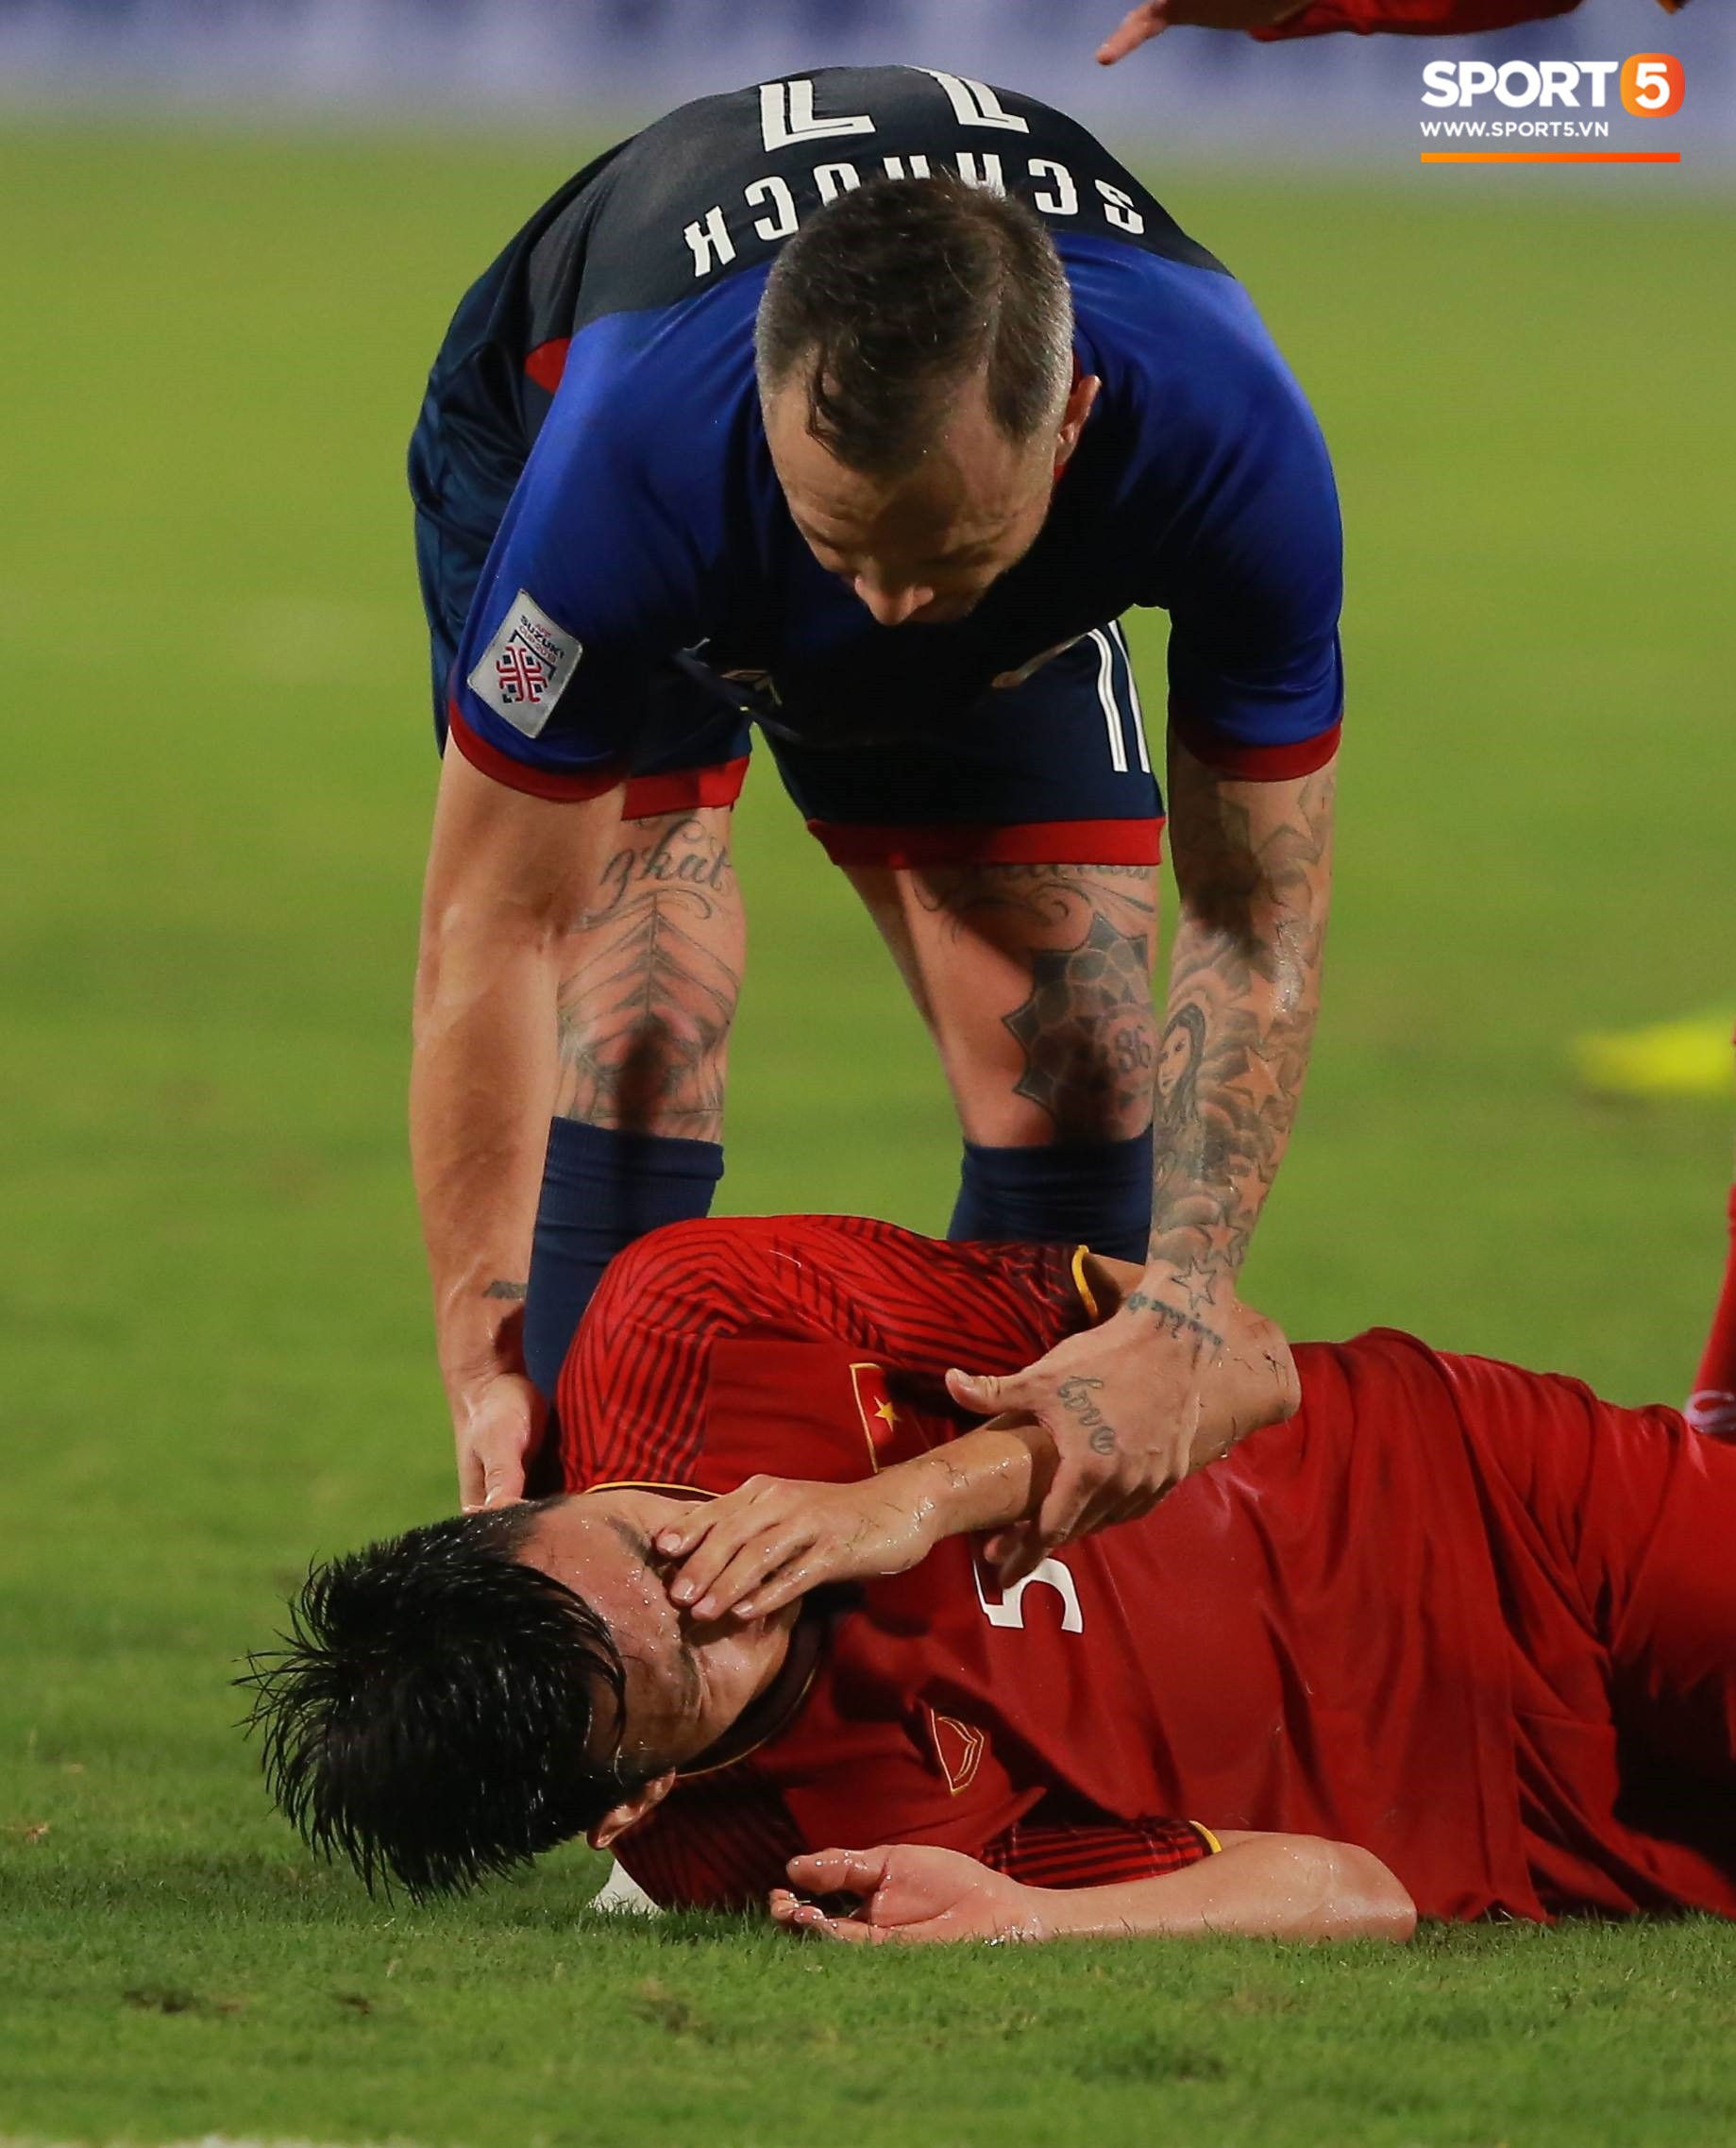 Hình ảnh Đình Trọng gay gắt chỉ thẳng mặt cầu thủ Philippines chơi xấu để bảo vệ em út Văn Hậu số 2